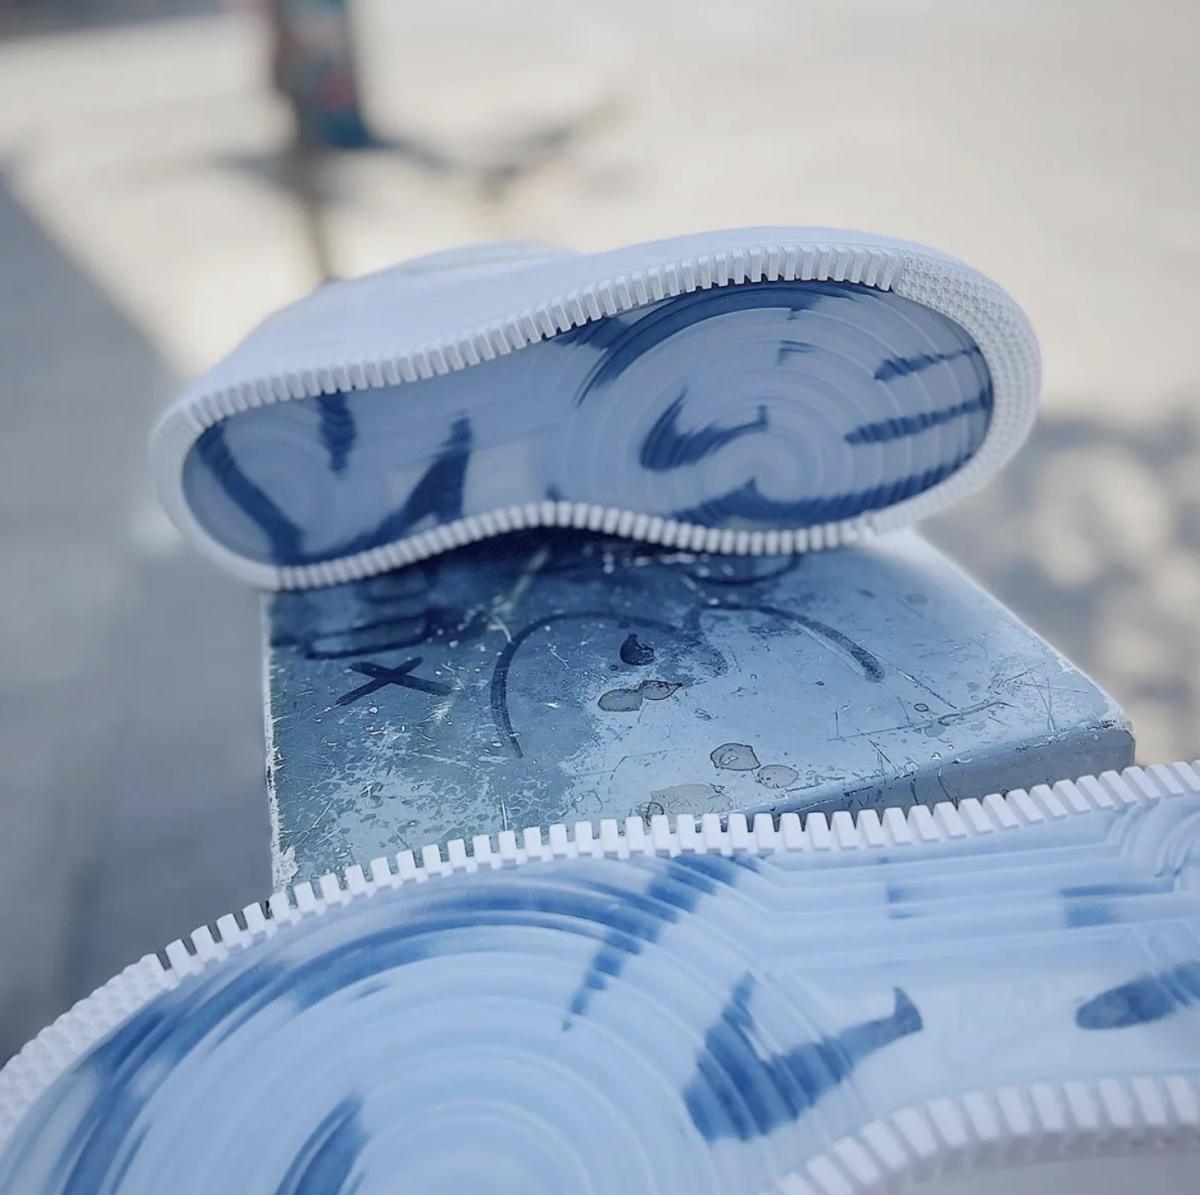 La Nike Air Force 1 "Vice" Friends & Family refait surface